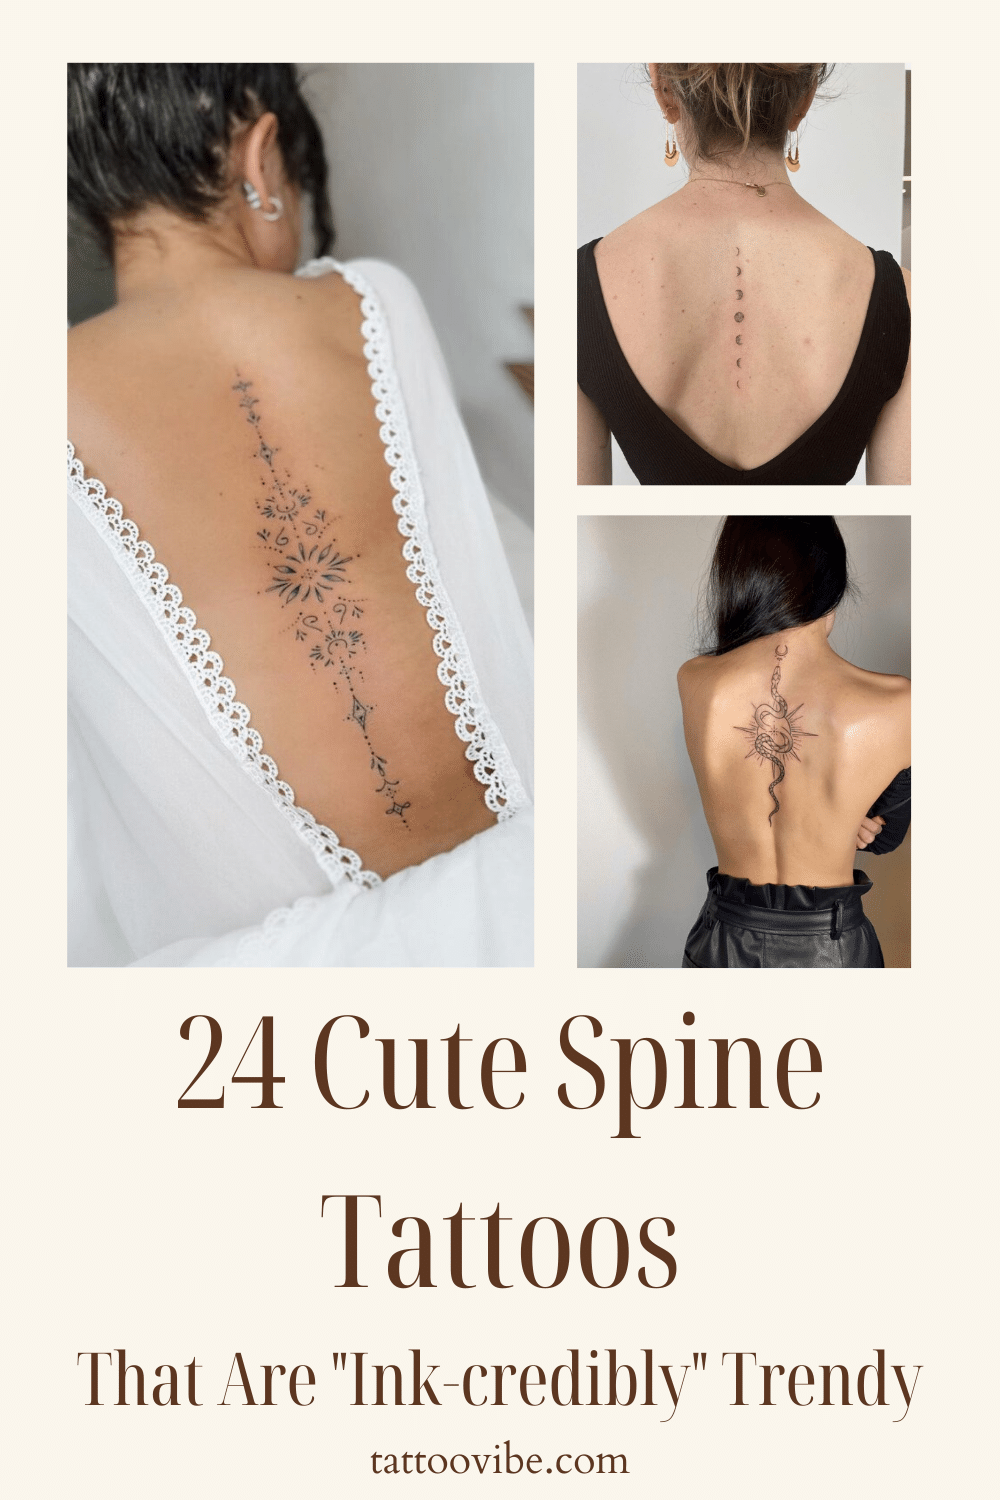 24 bonitos tatuajes en la columna vertebral que están "increíblemente" de moda